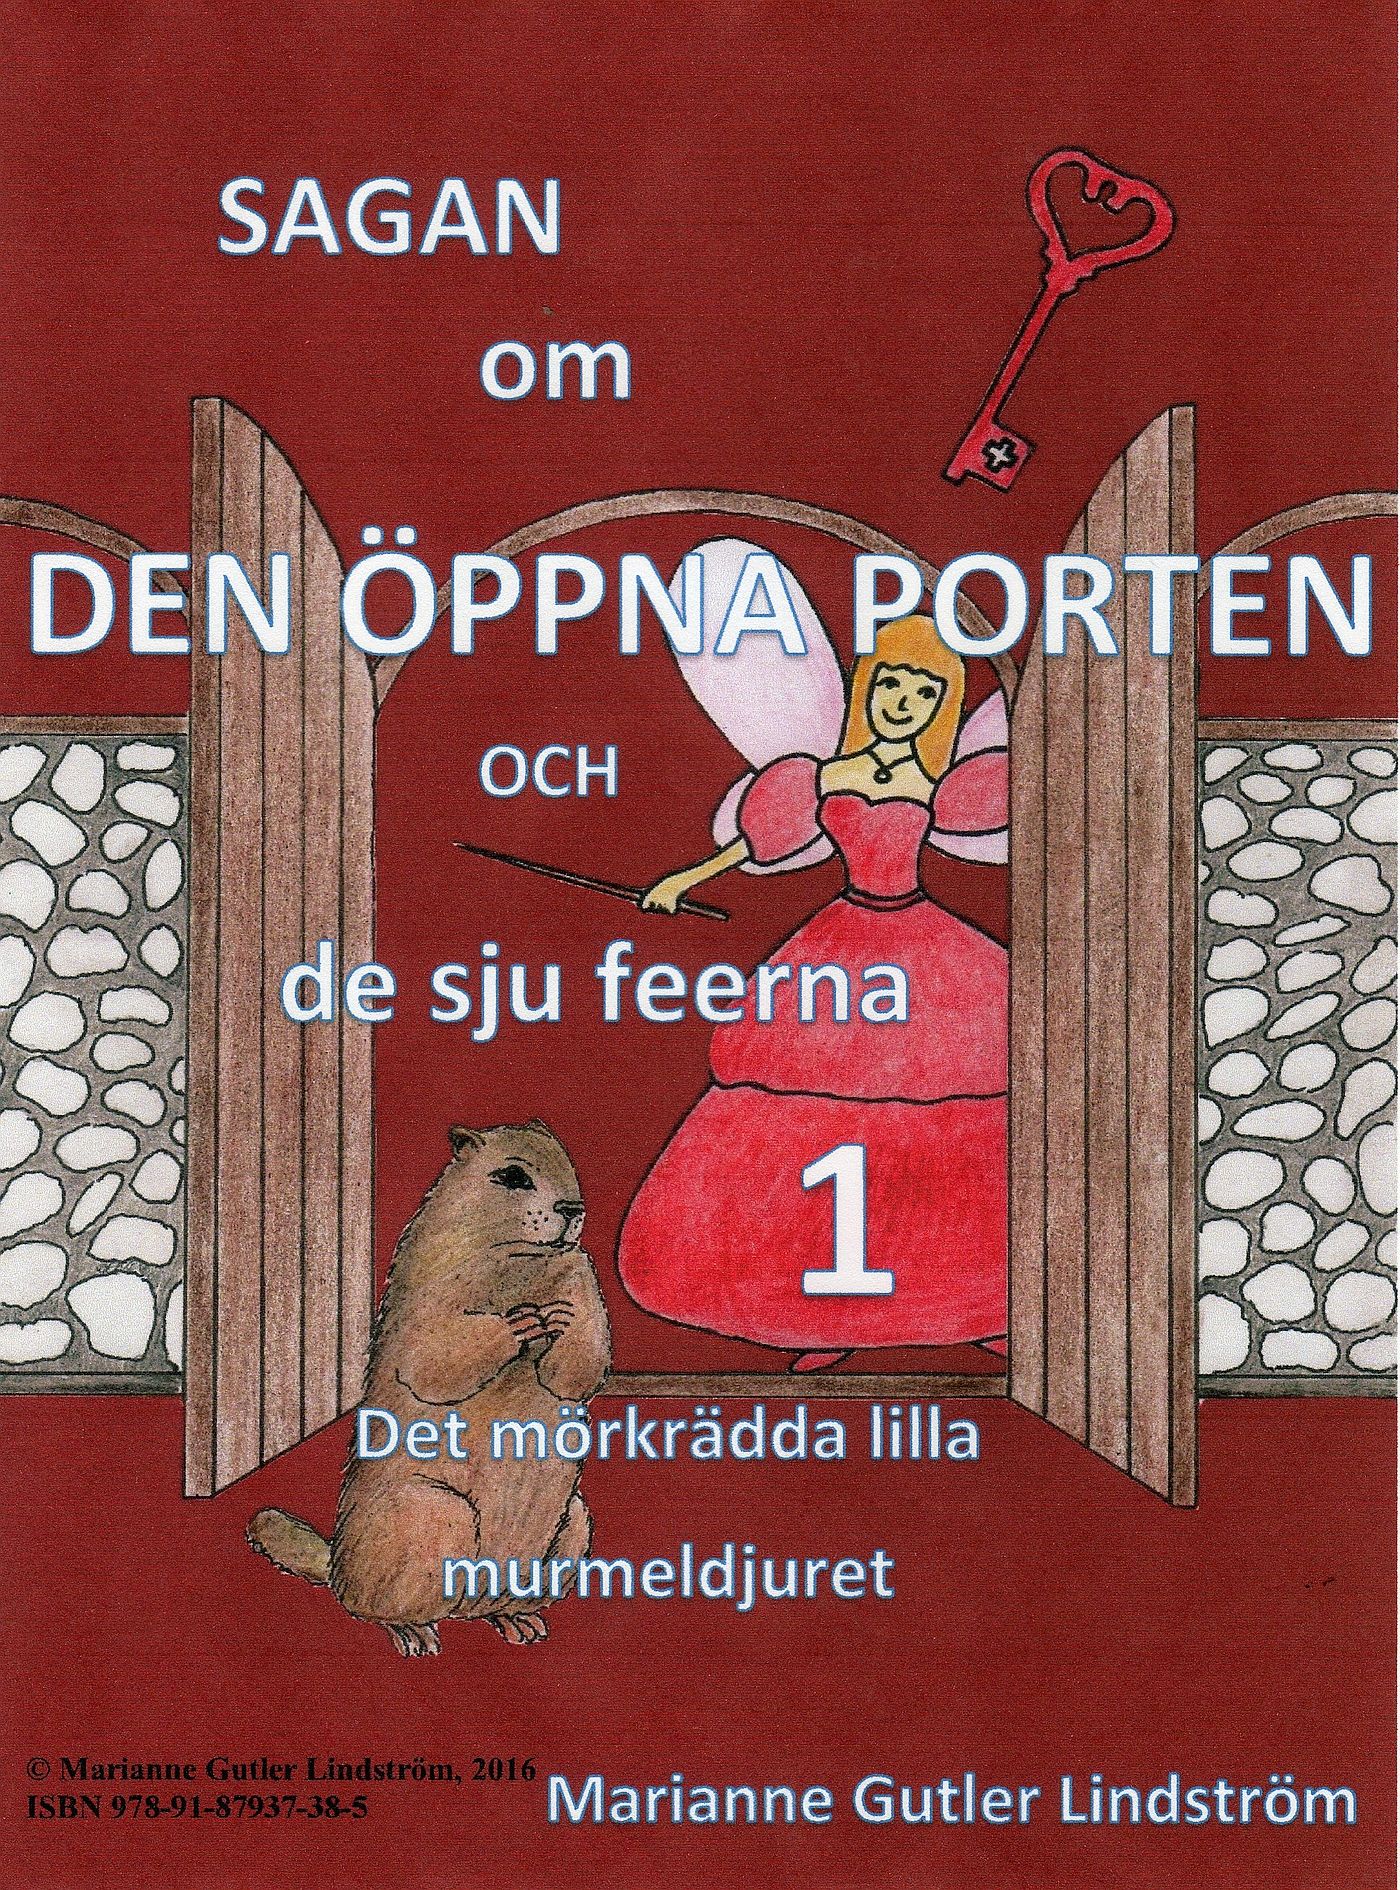 Sagan om den öppna porten 1. Det mörkrädda lilla murmeldjuret, e-bog af Marianne Gutler Lindström